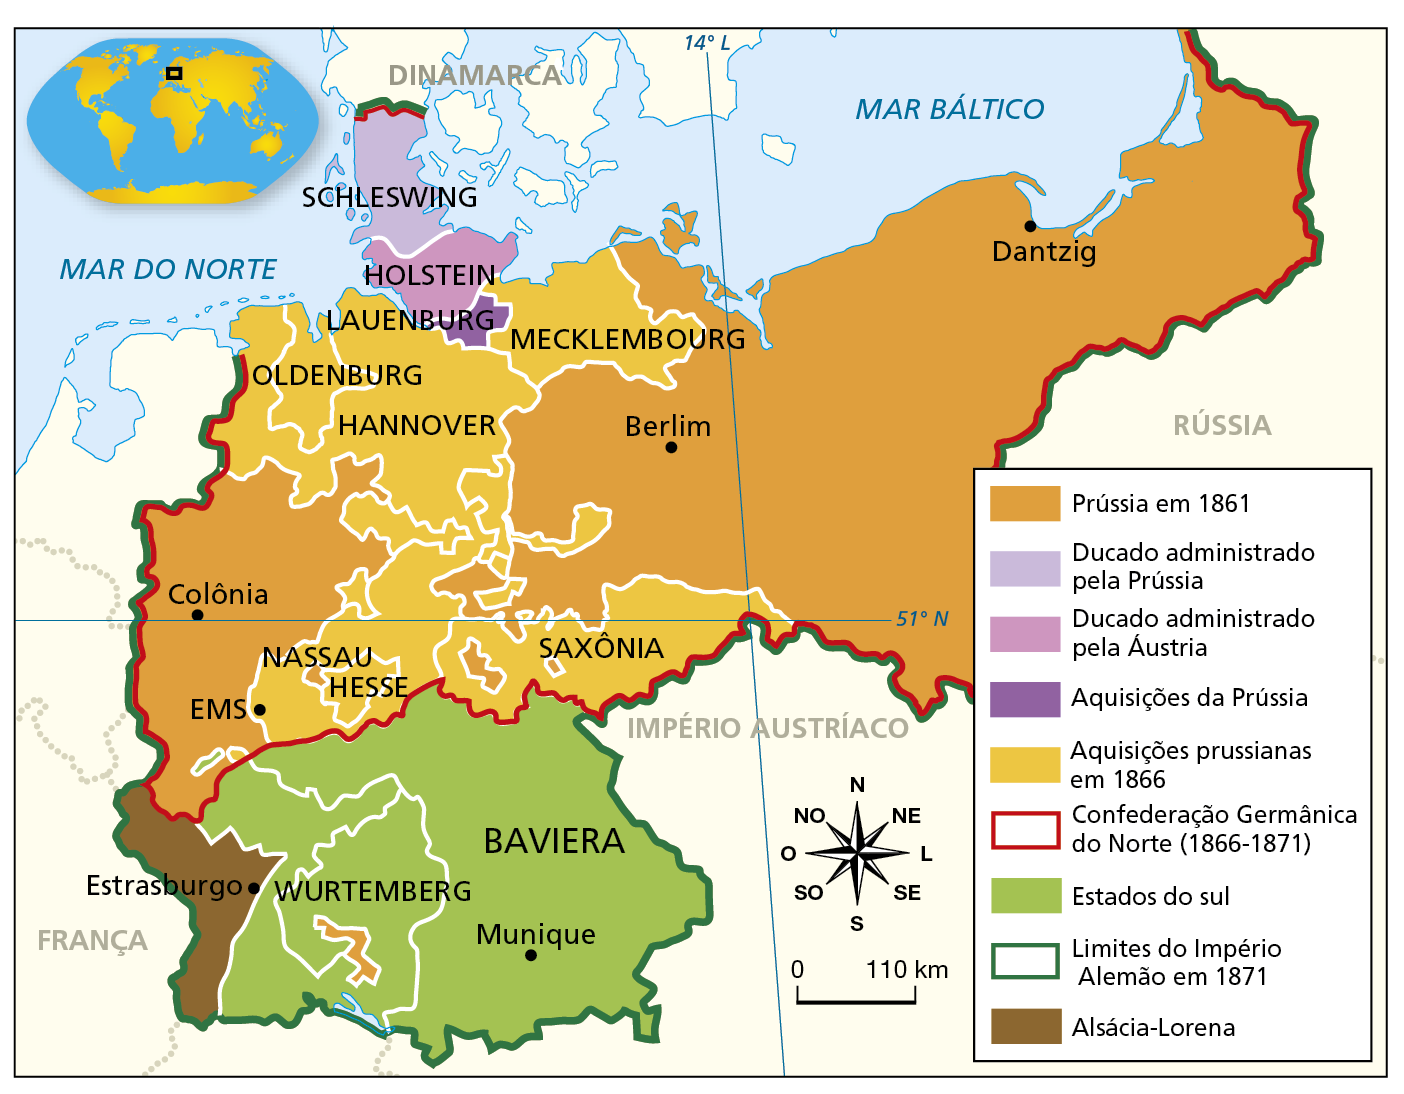 Mapa. Unificação da Alemanha. Século 19. Mapa representando parte do norte do continente europeu, com o Mar do Norte a noroeste e o Mar Báltico a nordeste. No continente, entre a França (a oeste), a Rússia (a leste), e o Império Austríaco (ao sul), diferentes territórios estão demarcados com cores distintas.  Na legenda, em cor de laranja, 'Prússia em 1861'. Estendendo-se a oeste, desde a fronteira com os Países Baixos, a Bélgica e a França, com destaque para a cidade de Colônia, até os limites das regiões de Hannover e Nassau, com territórios a norte de Hesse e na Saxônia. E a leste, estendendo-se desde os limites das regiões de Mecklembourg e Saxônia, com destaque para a cidade de Berlim, até a fronteira com a Rússia, atingindo o litoral do Mar Báltico com destaque para a cidade de Dantzig, e o Império Austríaco, ao sul. Em lilás, 'Ducado administrado pela Prússia'. Destaque para a região de Schleswing, na Península da Jutlândia, ao sul da Dinamarca. Em rosa, 'Ducado administrado pela Áustria'. Destaque para Holstein, ao sul de Schleswing, entre os mares do Norte e Báltico. Em roxo, 'Aquisições da Prússia'. Destaque para Lauenburg, ao sul de Holstein. Em amarelo, 'Aquisições prussianas em 1866'. Destaque para as regiões de Hannover, Oldenburg, Mecklembourg, Saxônia, Hesse e Nassau.  Contornada por uma linha vermelha, 'Confederação Germânica do Norte (1866-1871)'. Englobando os territórios da Prússia em 1861 e as regiões de Hannover, Oldenburg, Mecklembourg, Nassau, Hesse, Saxônia, Lauenburg, Holstein e Schleswing.  Em verde claro, 'Estados do sul'. Englobando Wurtemberg e Baviera (com destaque para a cidade de Munique), ao sul da Confederação Germânica do Norte.  Contornado por uma linha verde escura, 'Limites do Império Alemão em 1871'. Englobando os territórios da Confederação Germânica do Norte e as regiões da Alsácia-Lorena (ao sul da Prússia), Wurtemberg e Baviera (com destaque para a cidade de Munique).  Em marrom, 'Alsácia-Lorena', um território ao sul da Prússia, a leste da França e a oeste de Wurtemberg, com destaque para a cidade de Estrasburgo. No canto inferior direito, rosa dos ventos e escala de 0 a 110 quilômetros.